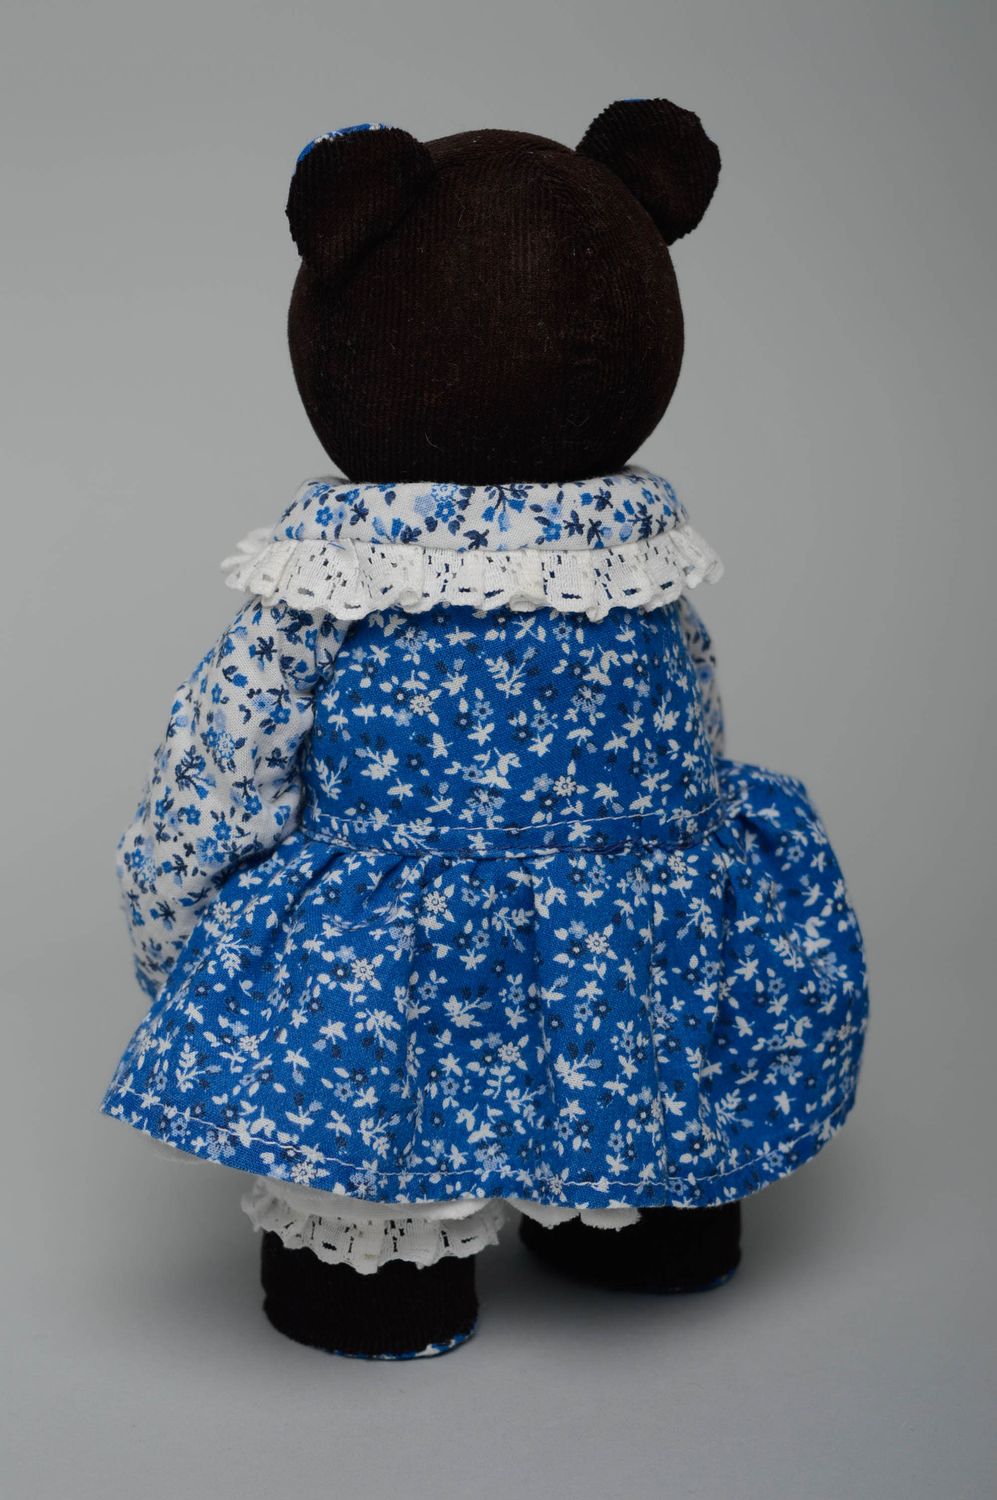 Textil Kuscheltier Bär im Kleid foto 5